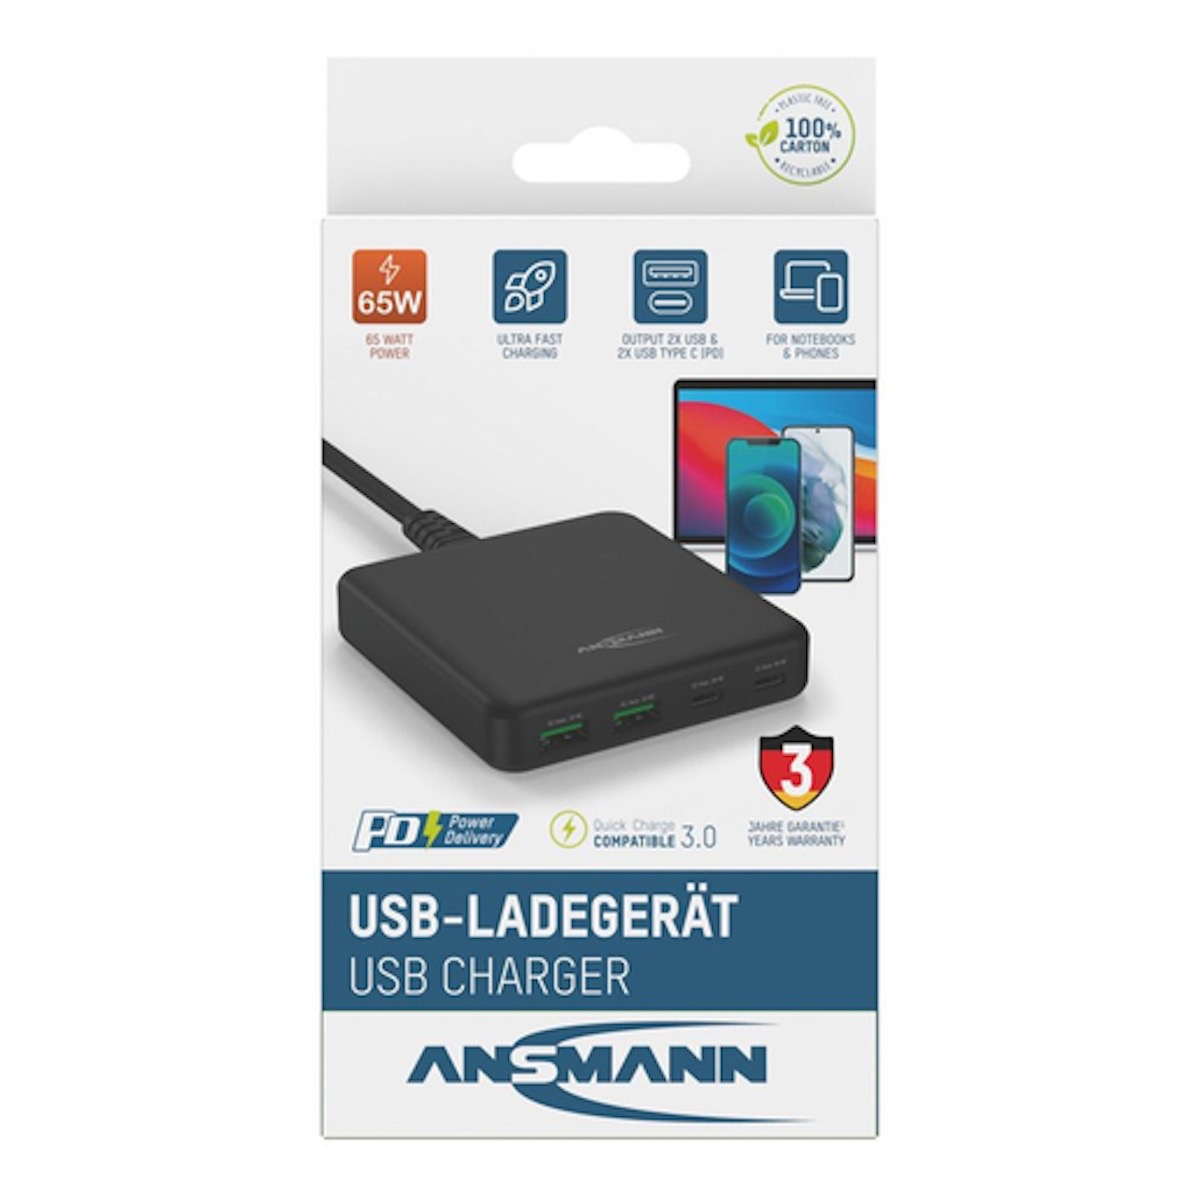 Ansmann DC 465 PD Desktop Charger USB Ladegerät